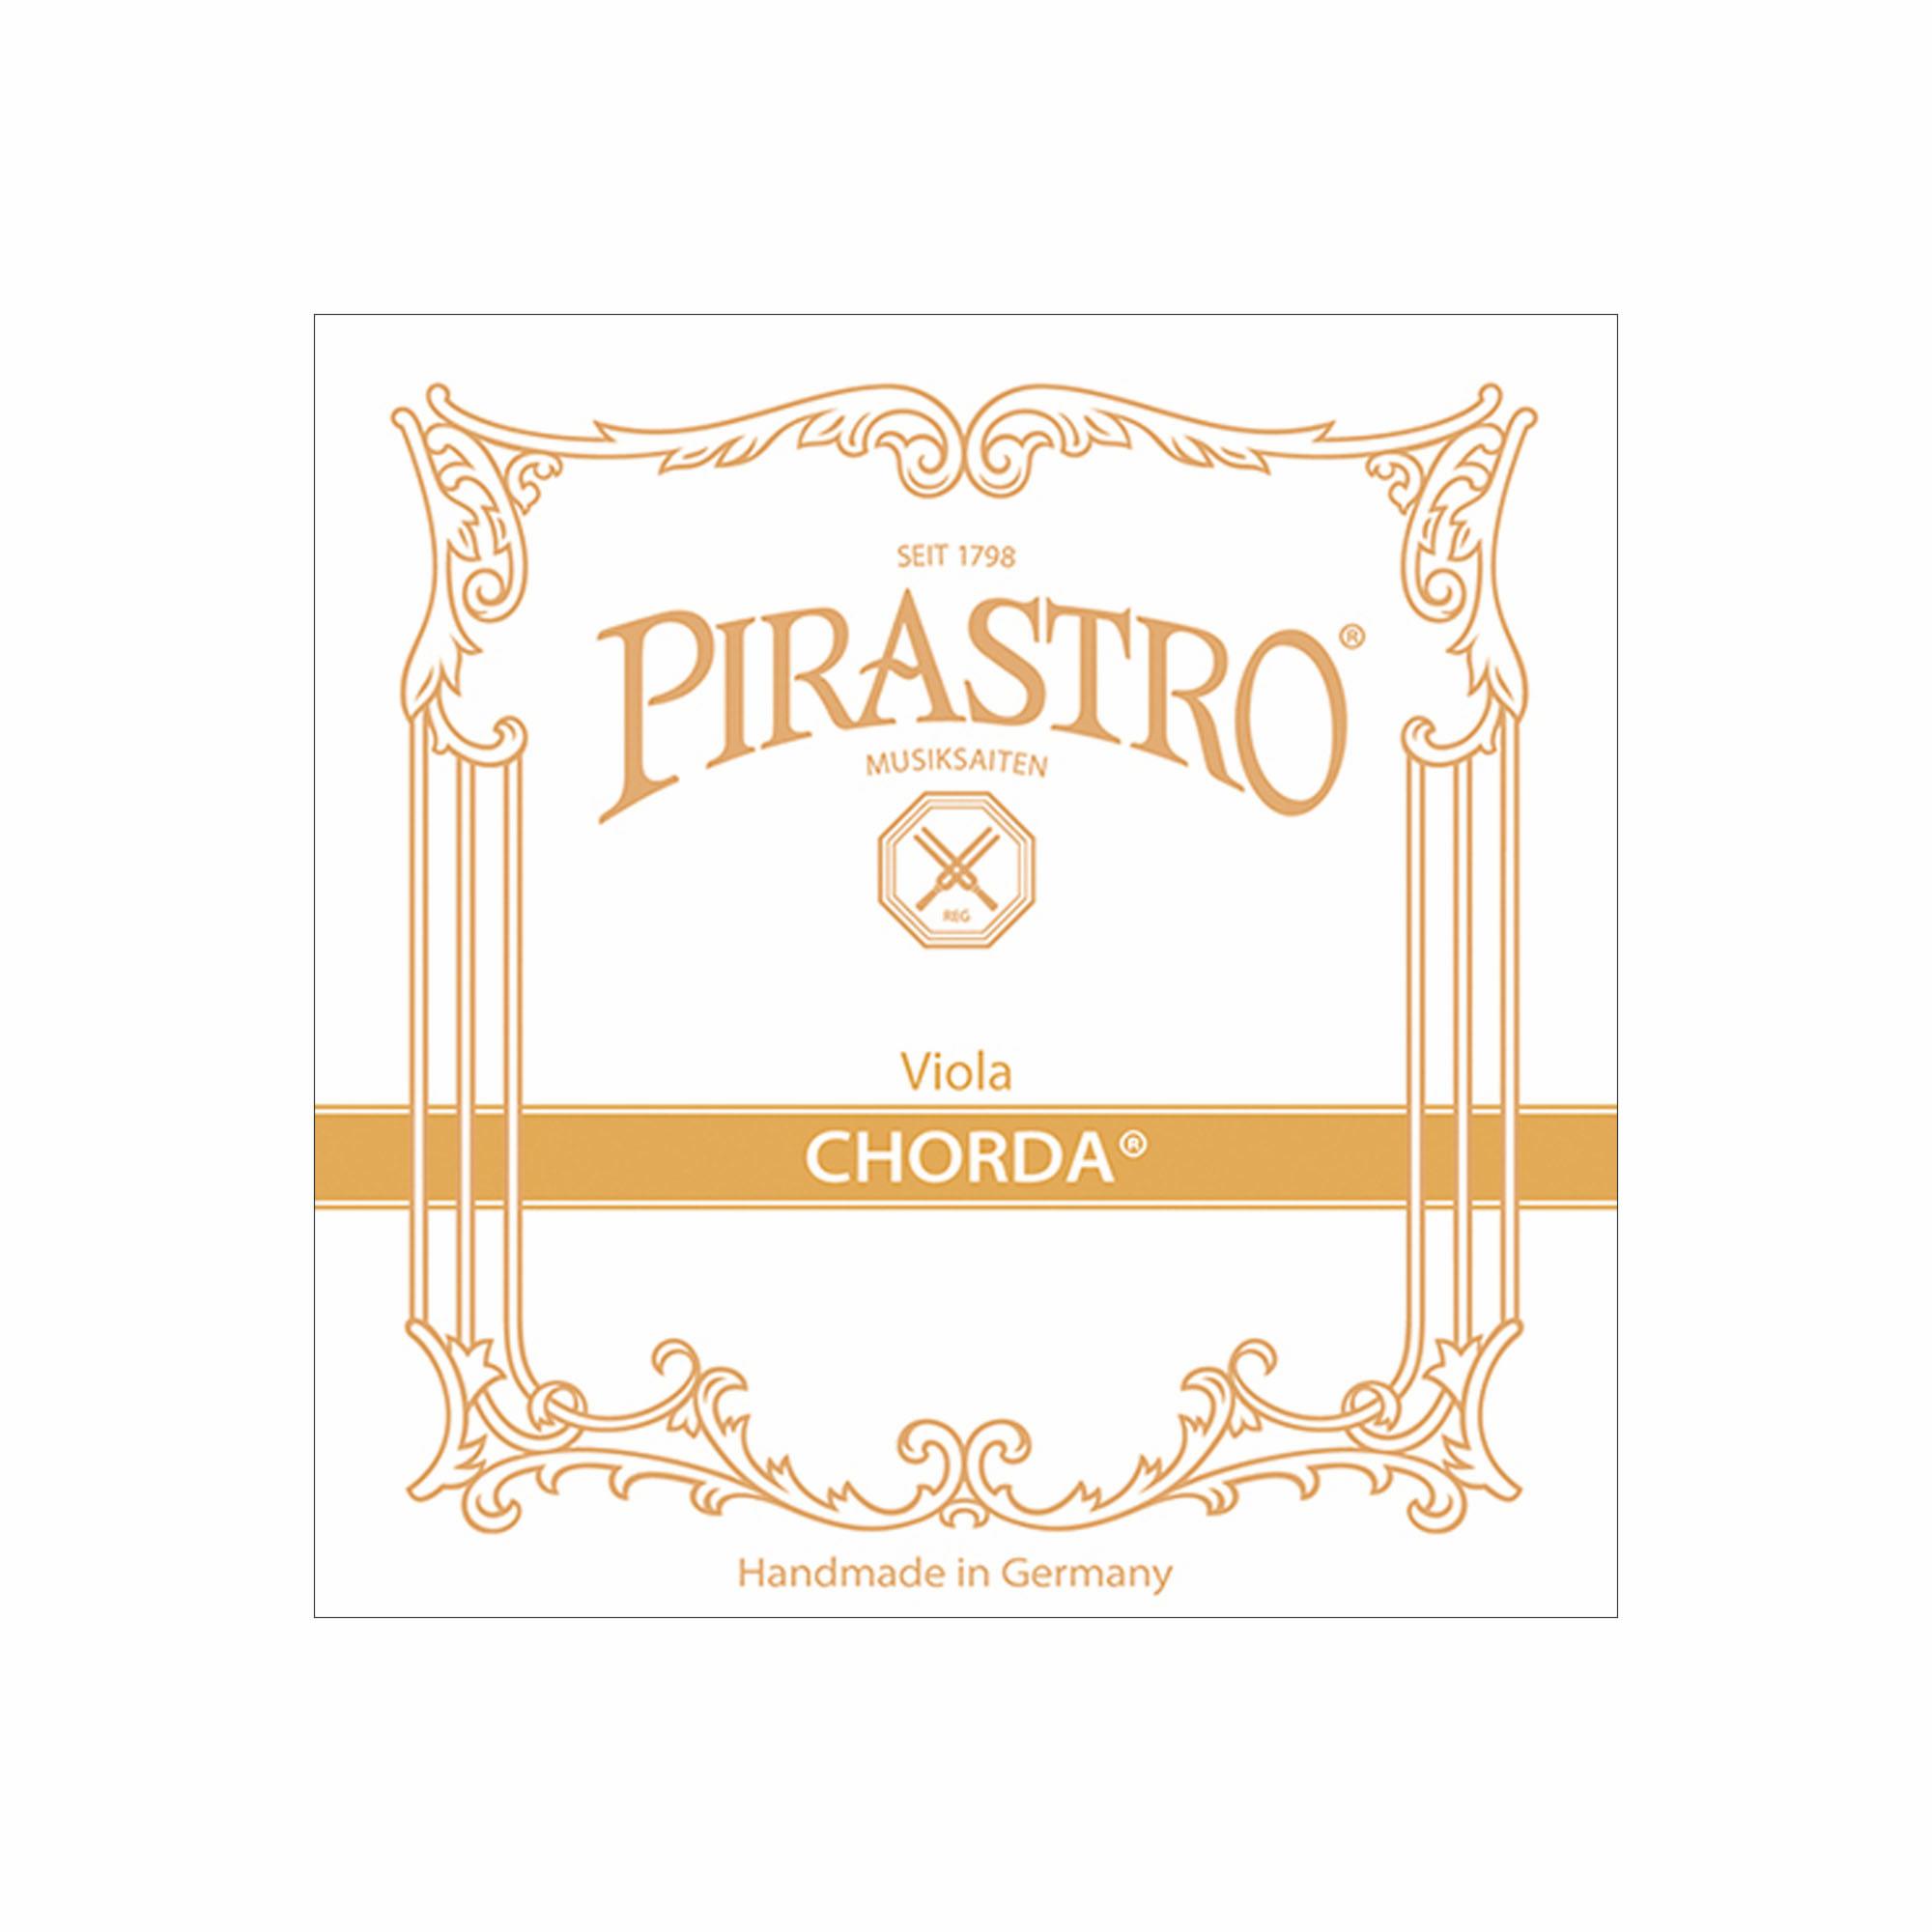 Pirastro Chorda Viola Strings